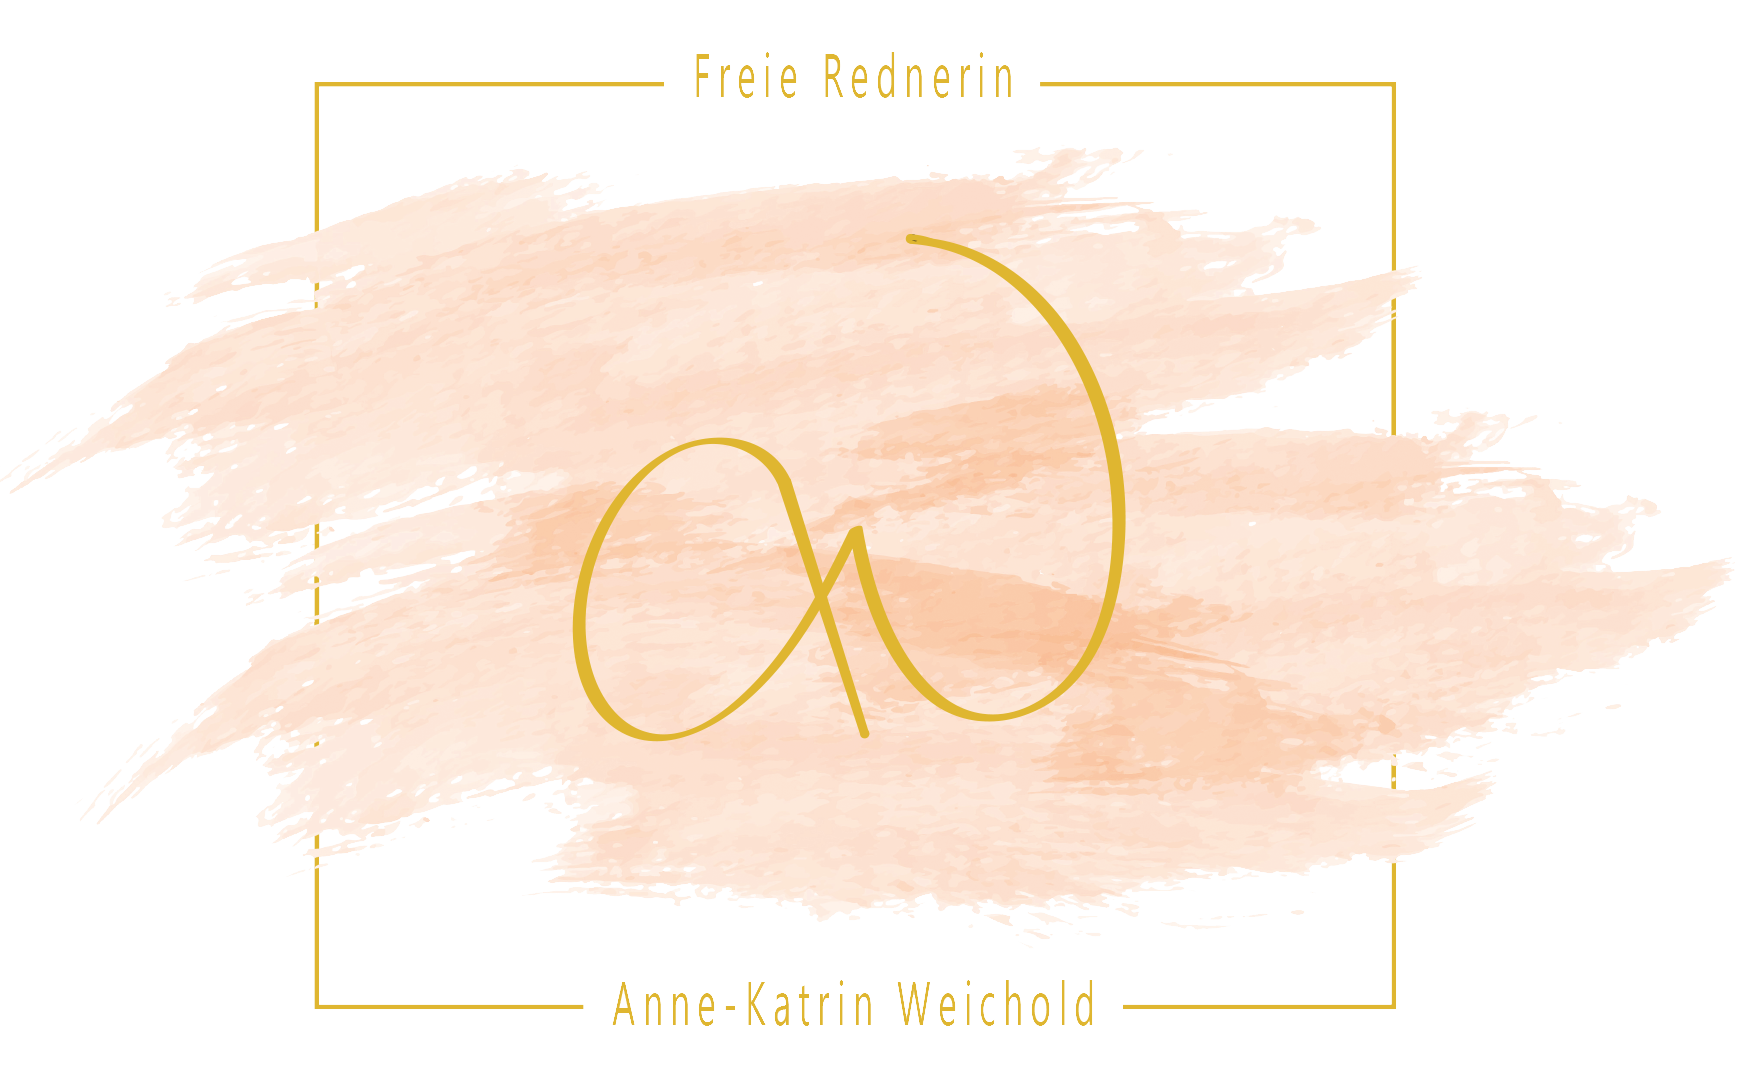 Anne-Katrin Weichold